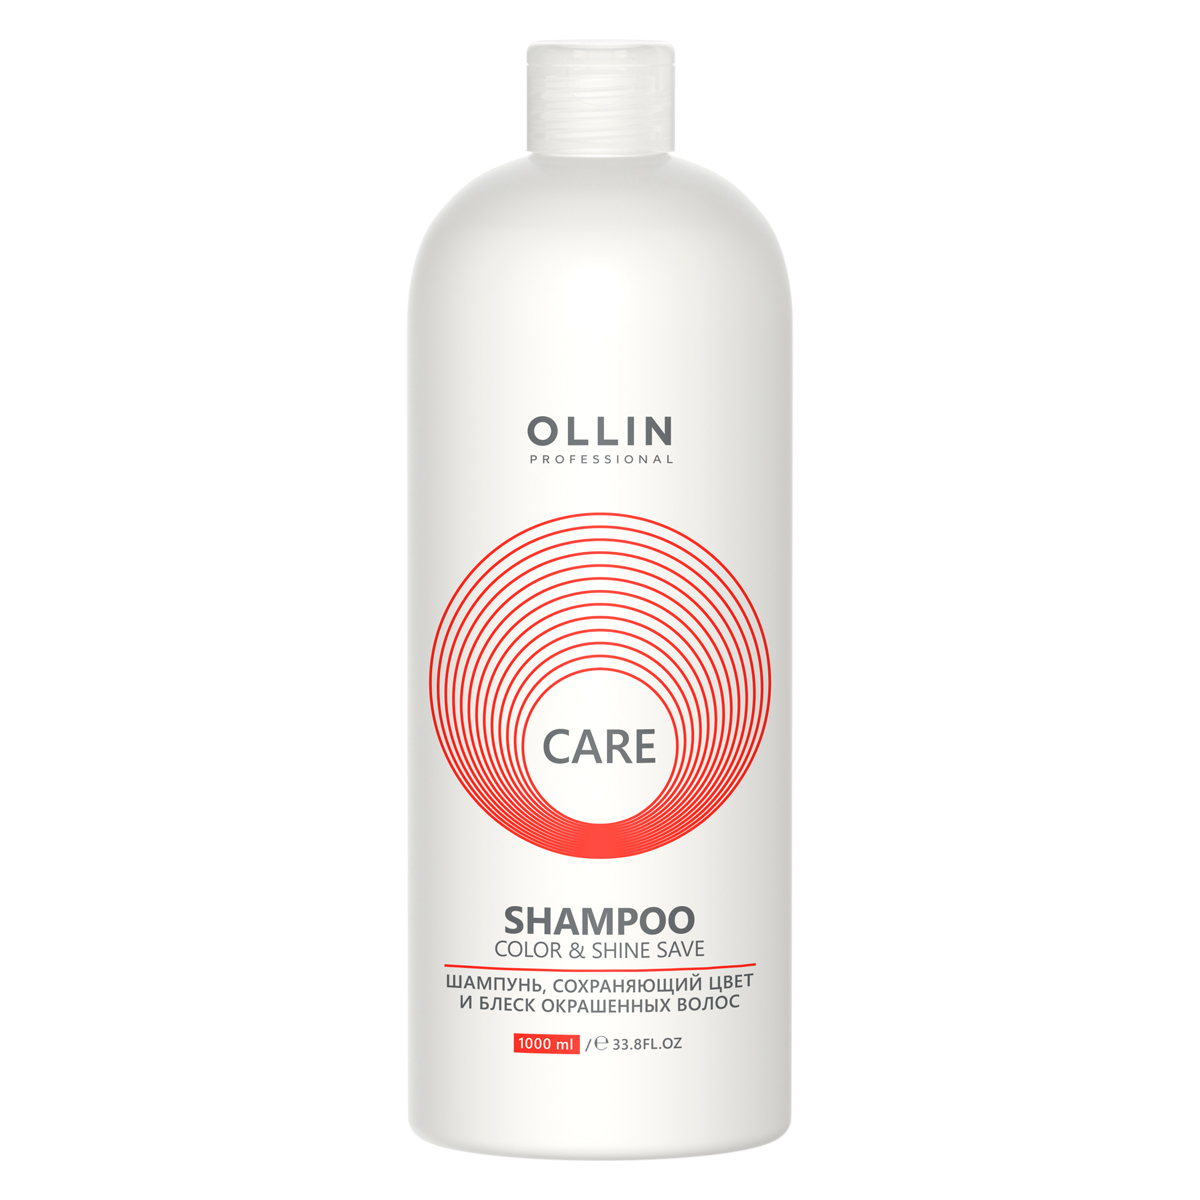 Ollin Professional Шампунь, сохраняющий цвет и блеск окрашенных волос, 1000 мл (Ollin Professional, Care) шампунь сохраняющий цвет и блеск окрашенных волос ollin professional color